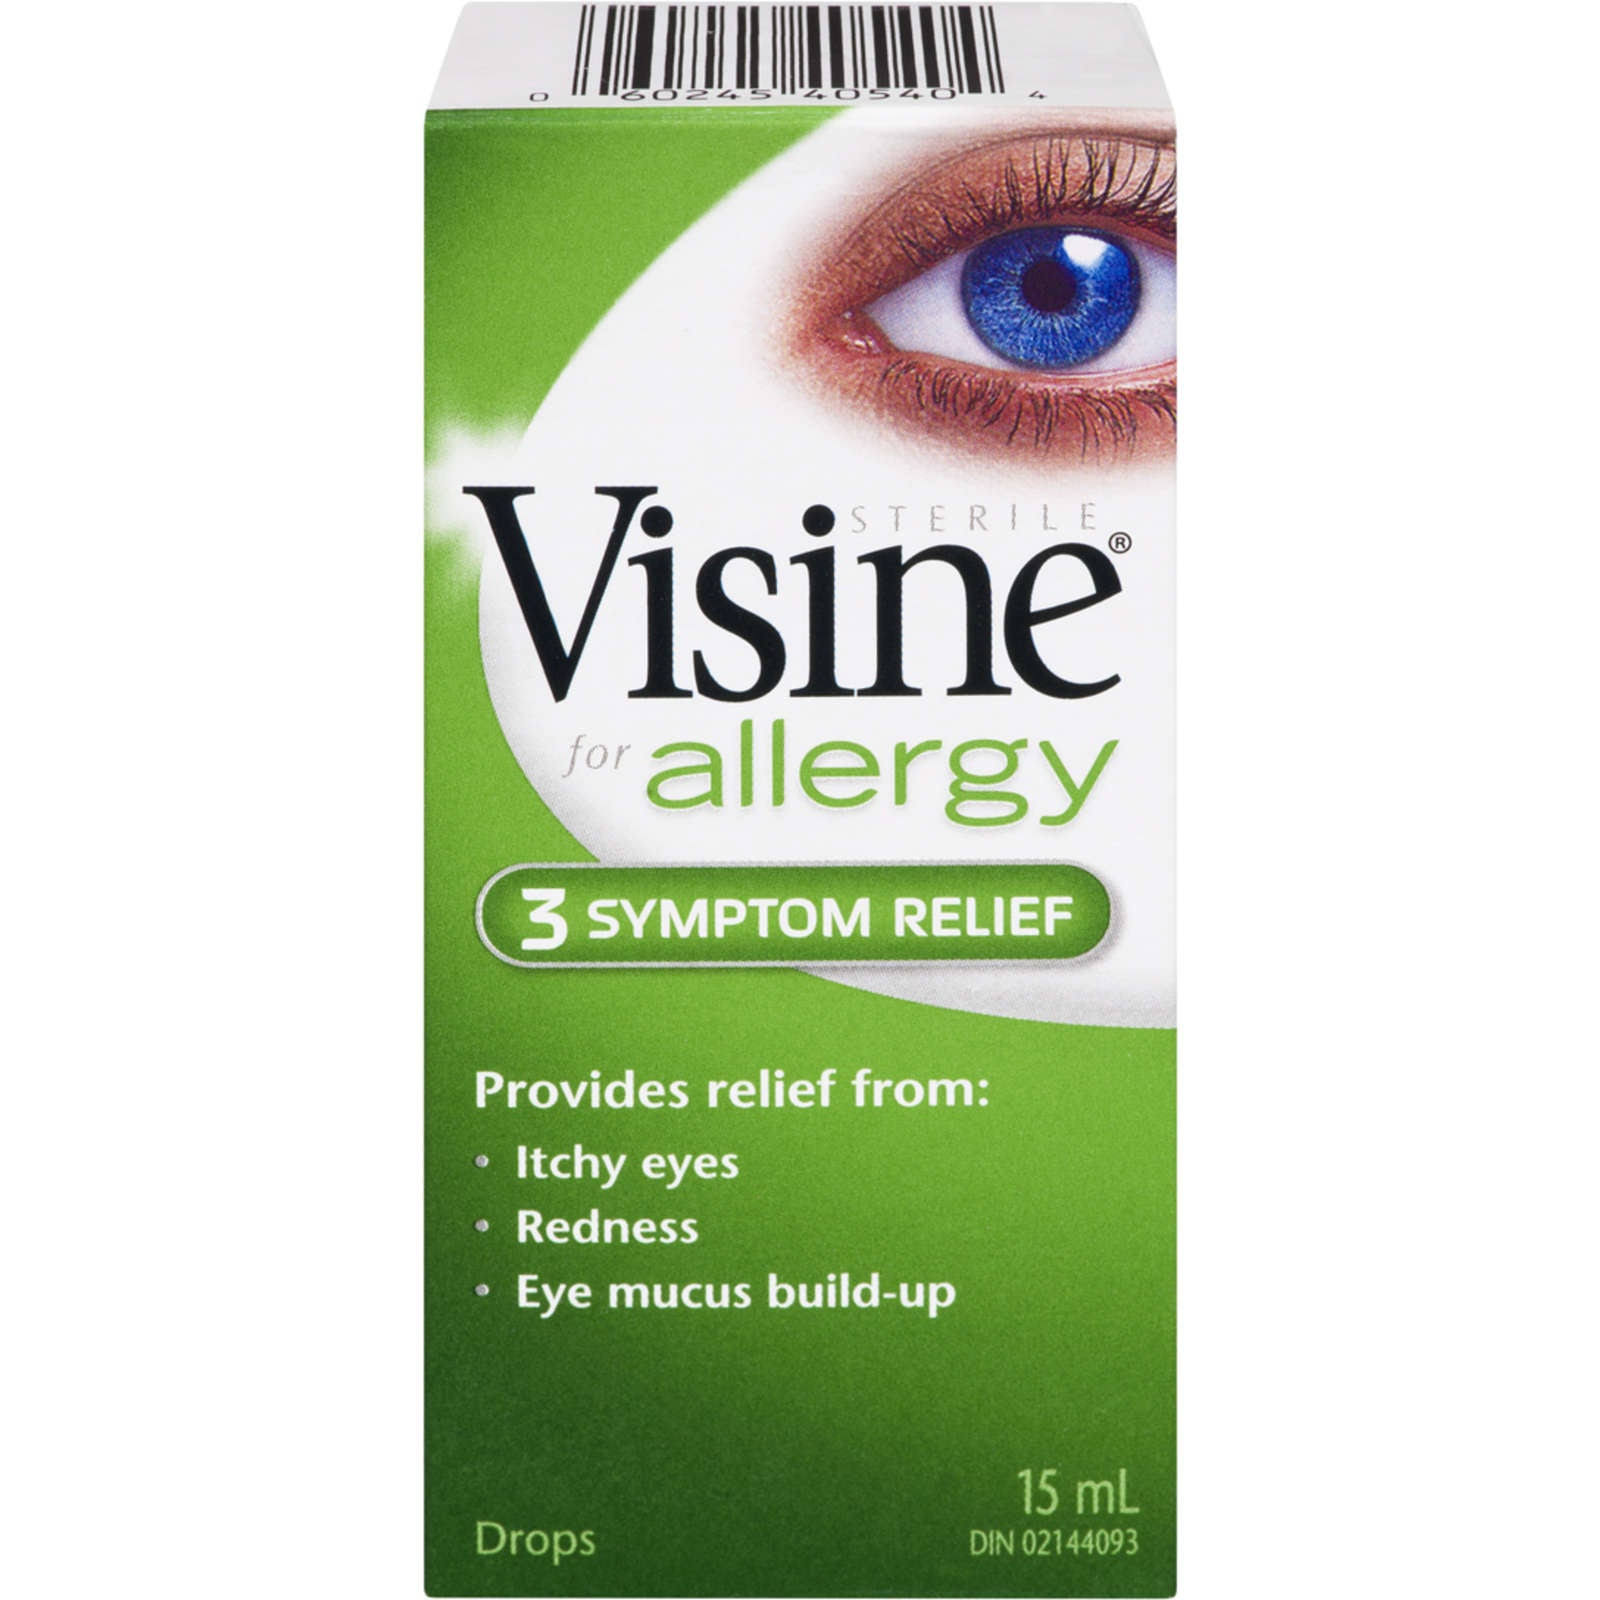 Visine Allergy Seasonal Relief Eye Drops - 15ml